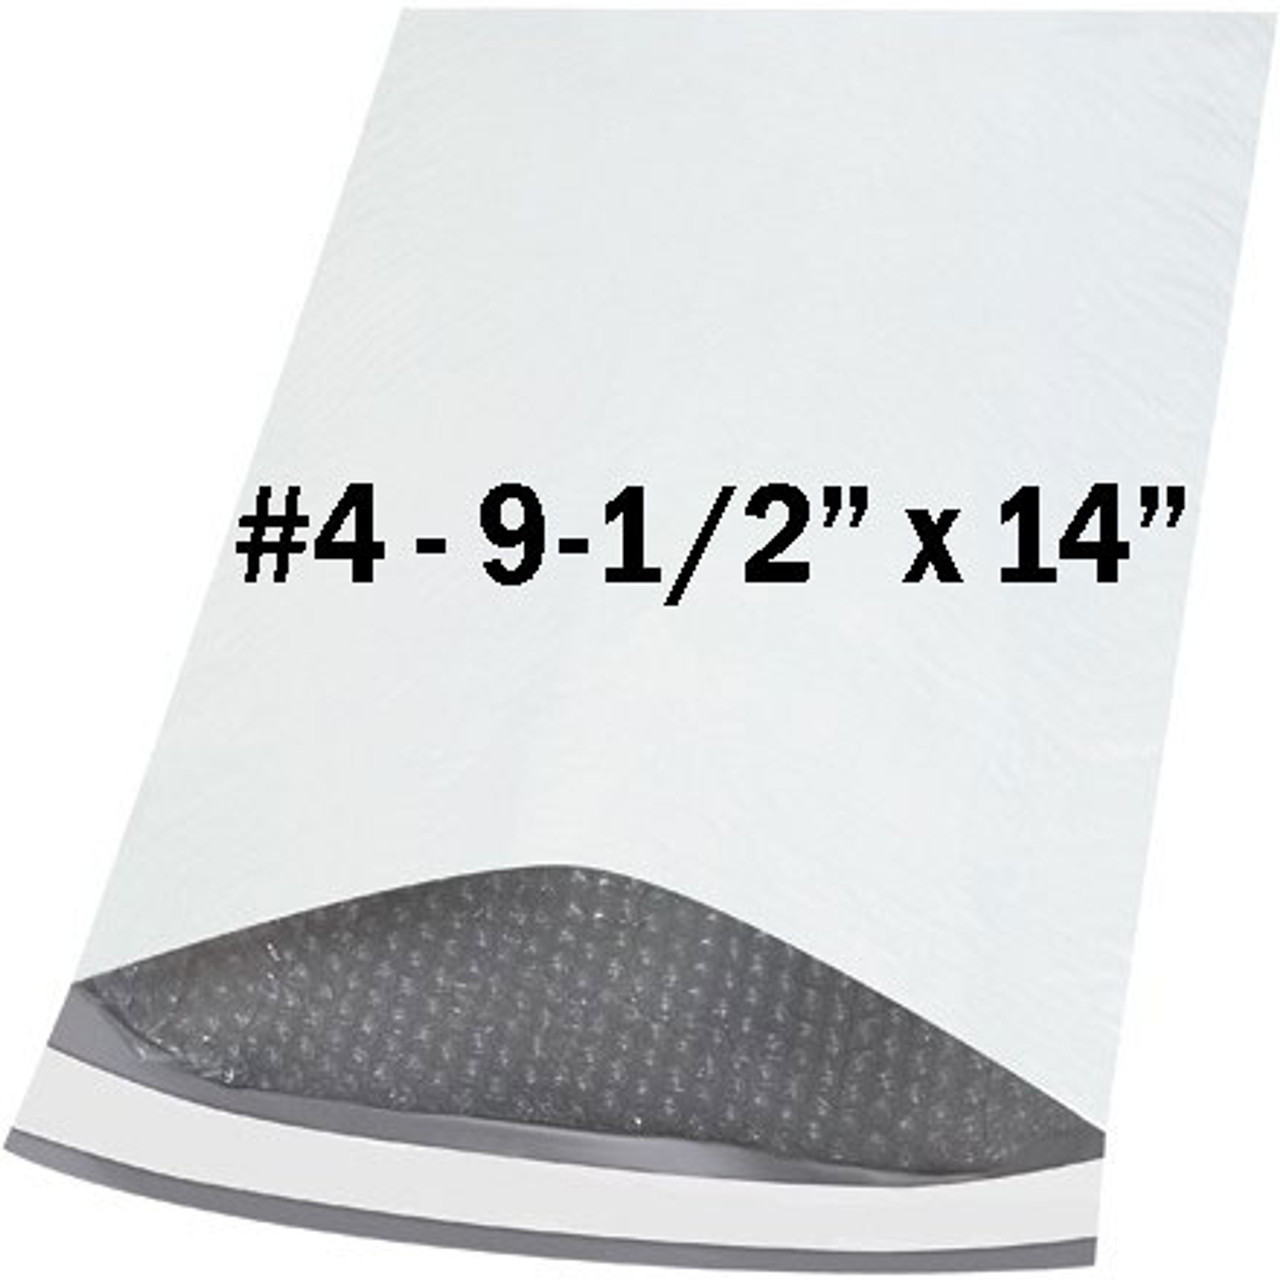 #4 - 9-1/2" x 14.5" white poly bubble envelope - ea.